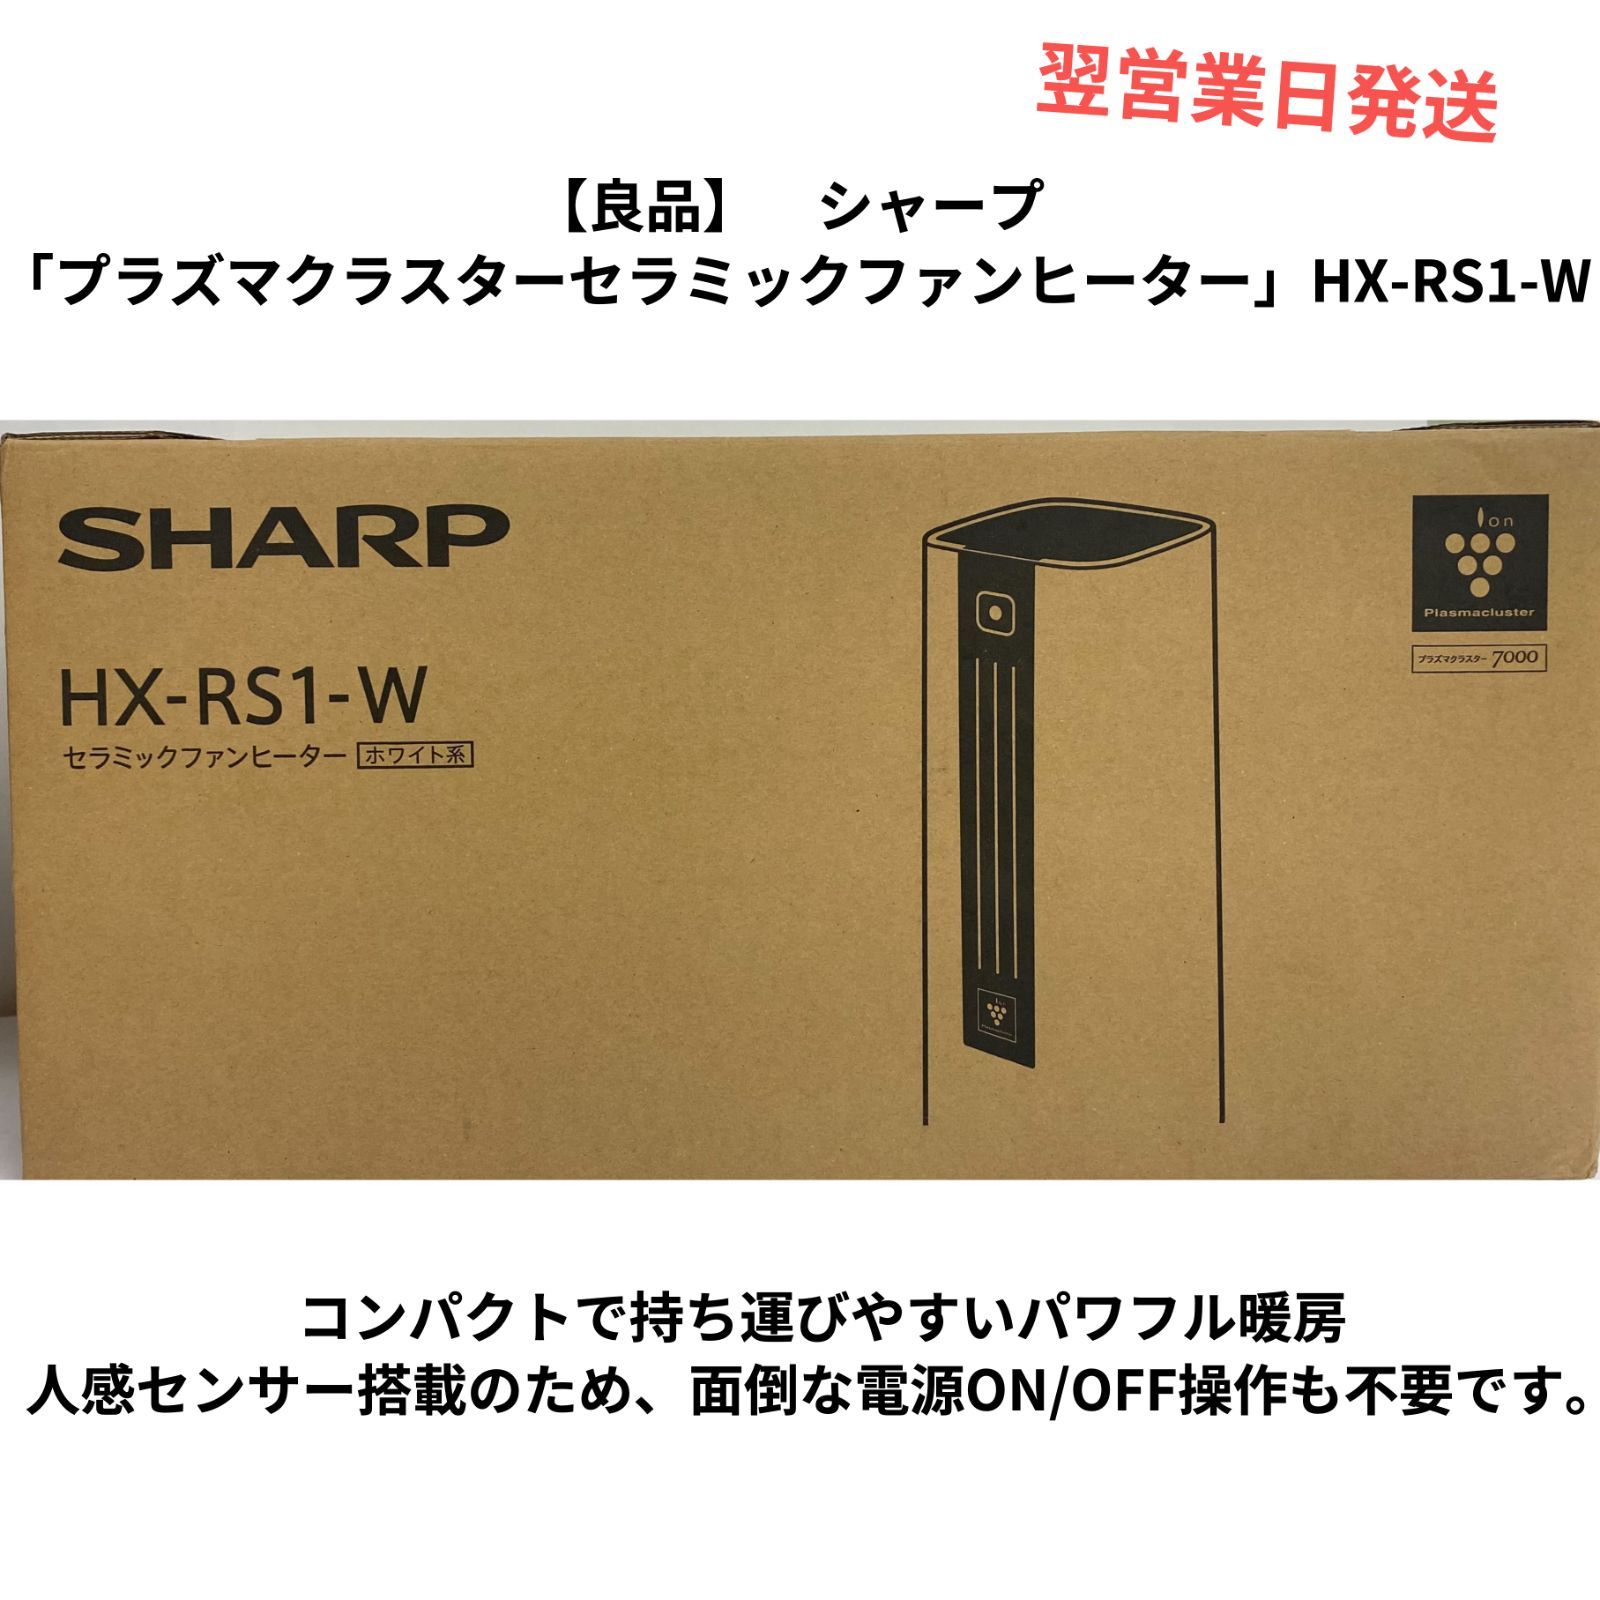 SHARP HX-RS1-W プラズマクラスター セラミックファンヒーター